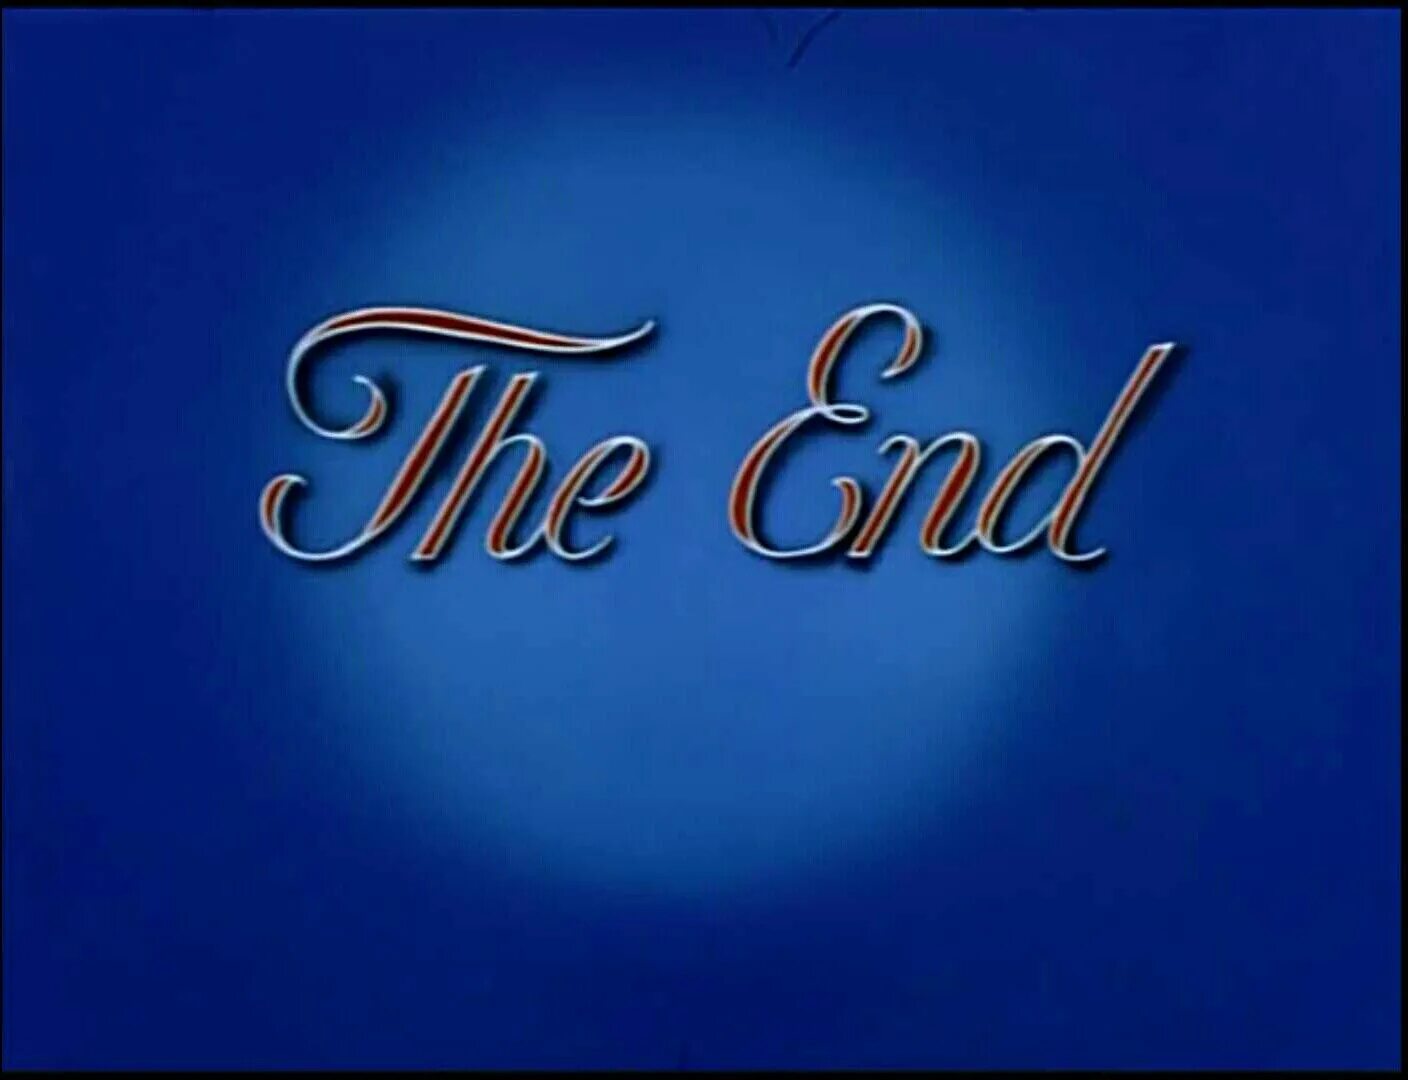 Картинка the end. Конец картинка. The end картинка. Конец по английскому. Красивый конец.